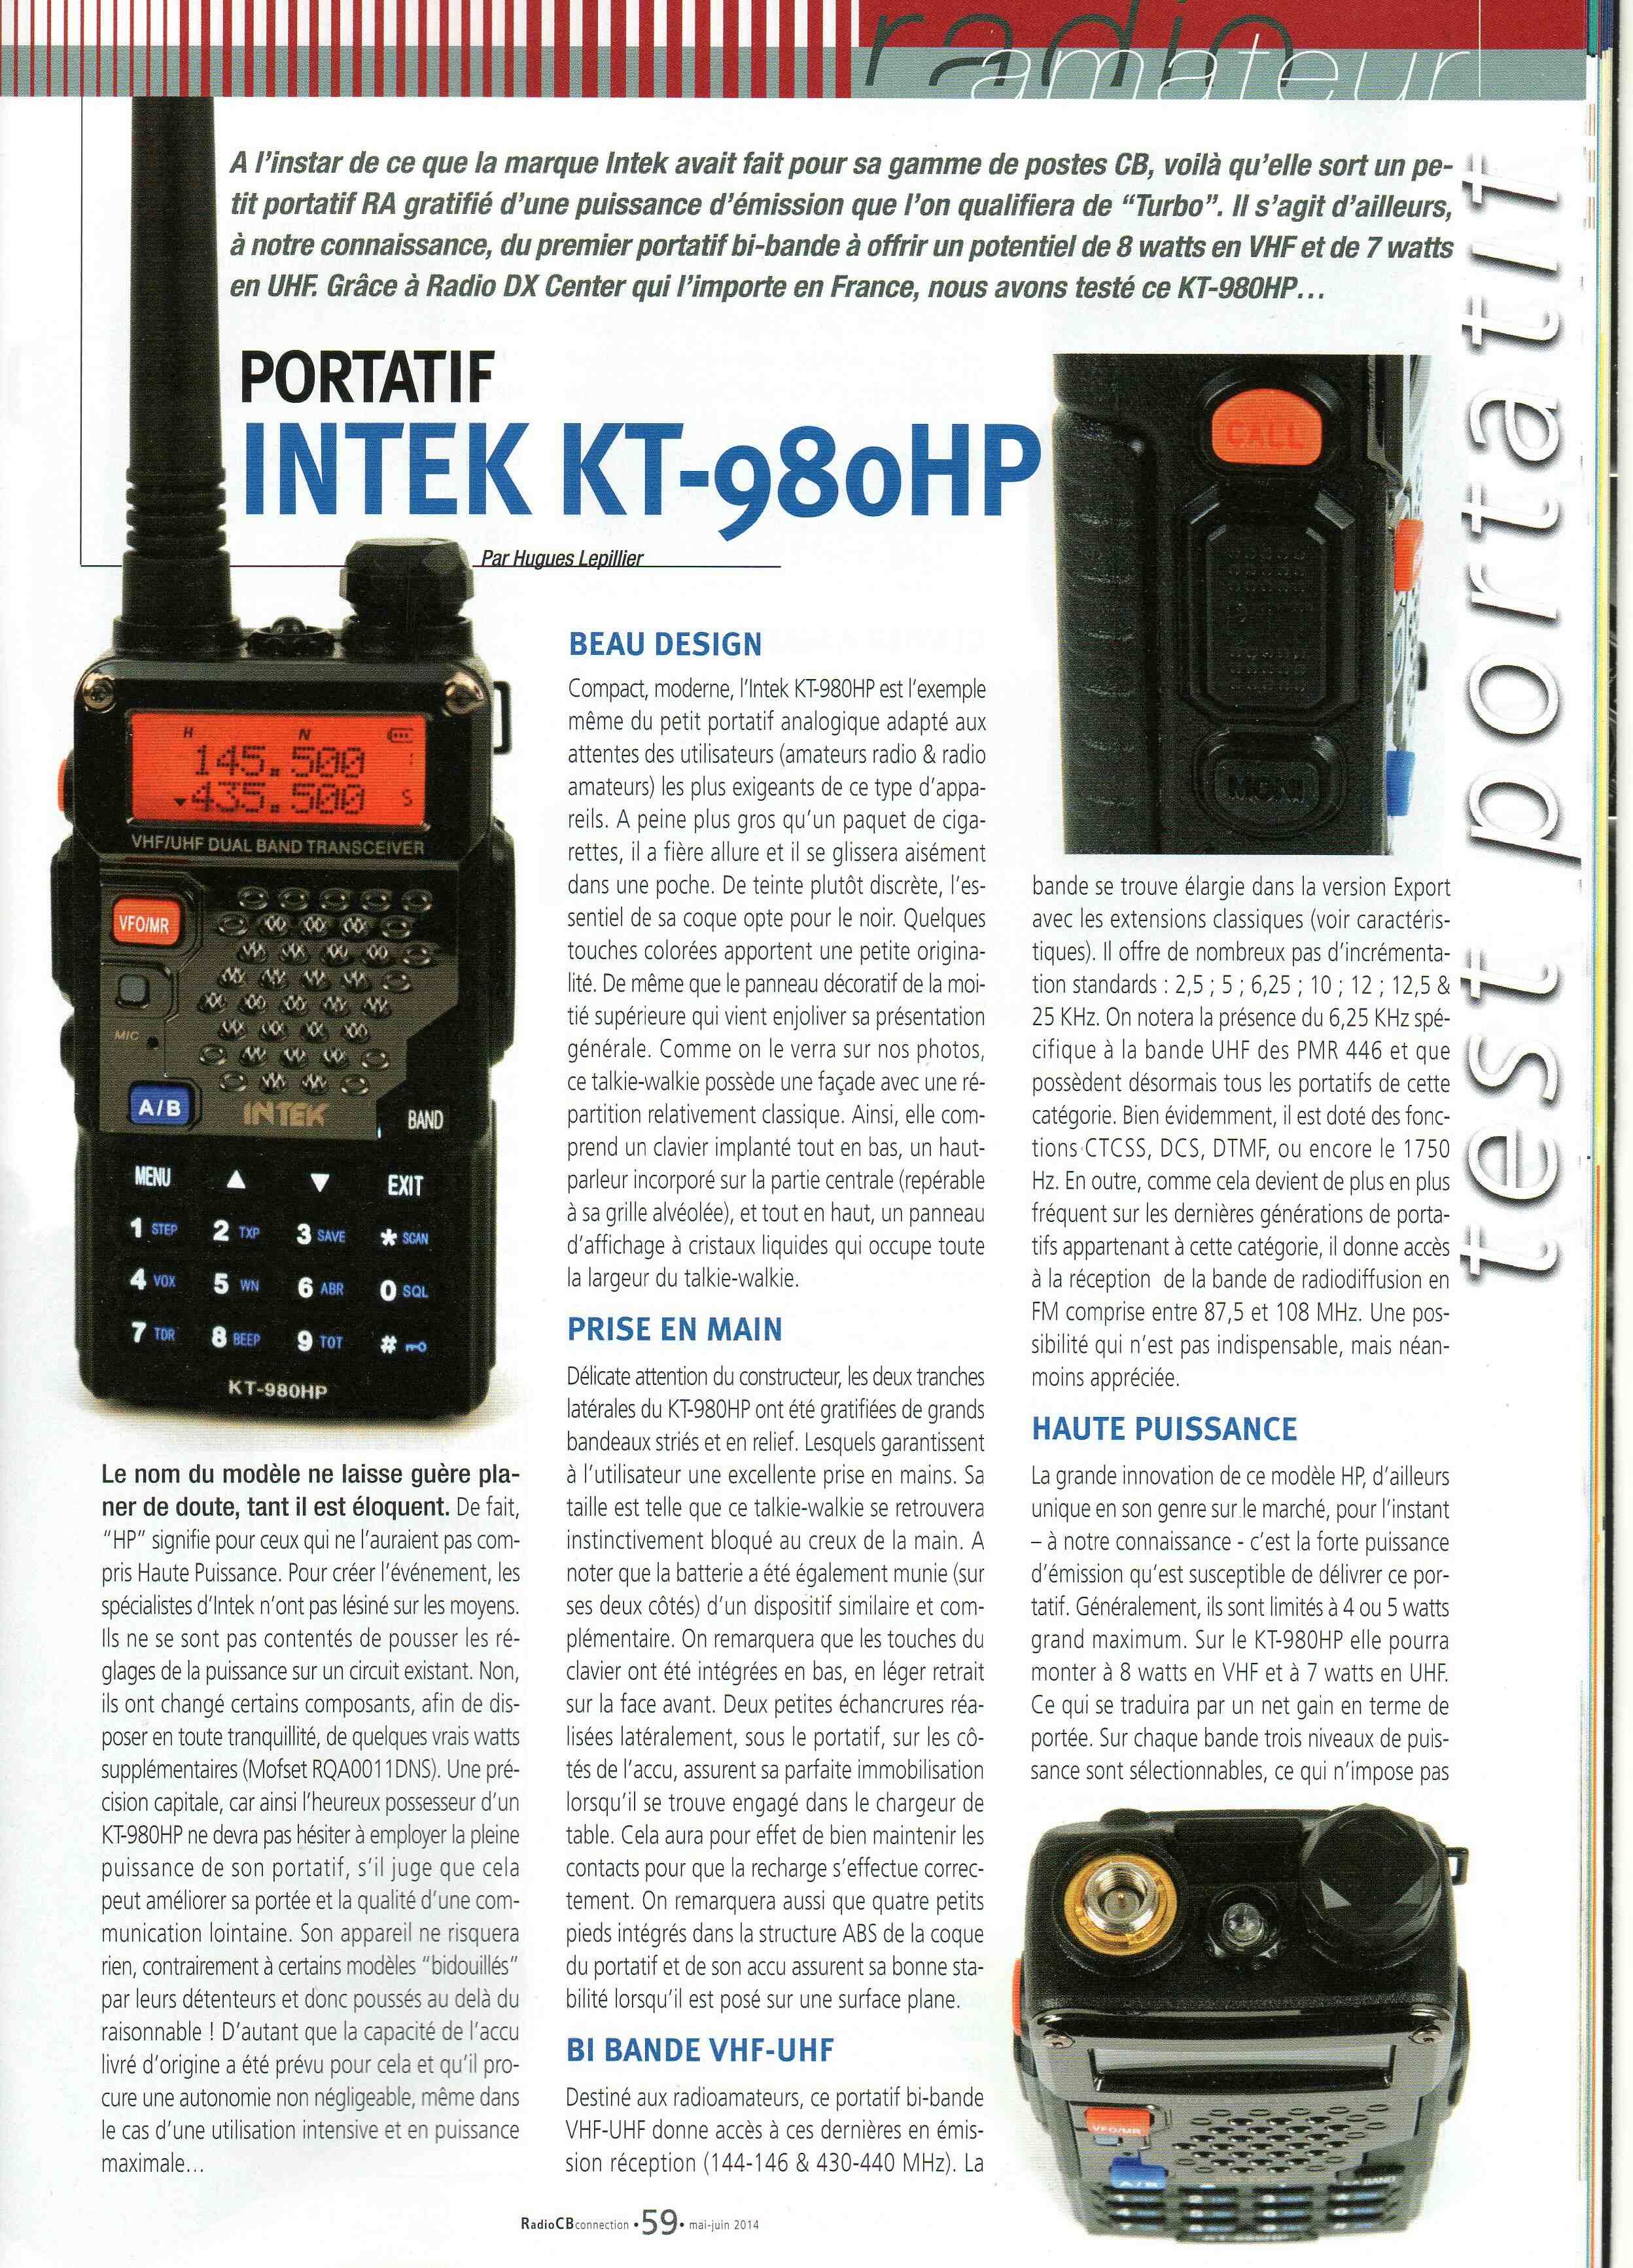 pmr446 - Intek KT-980HP (Portable) Img94410